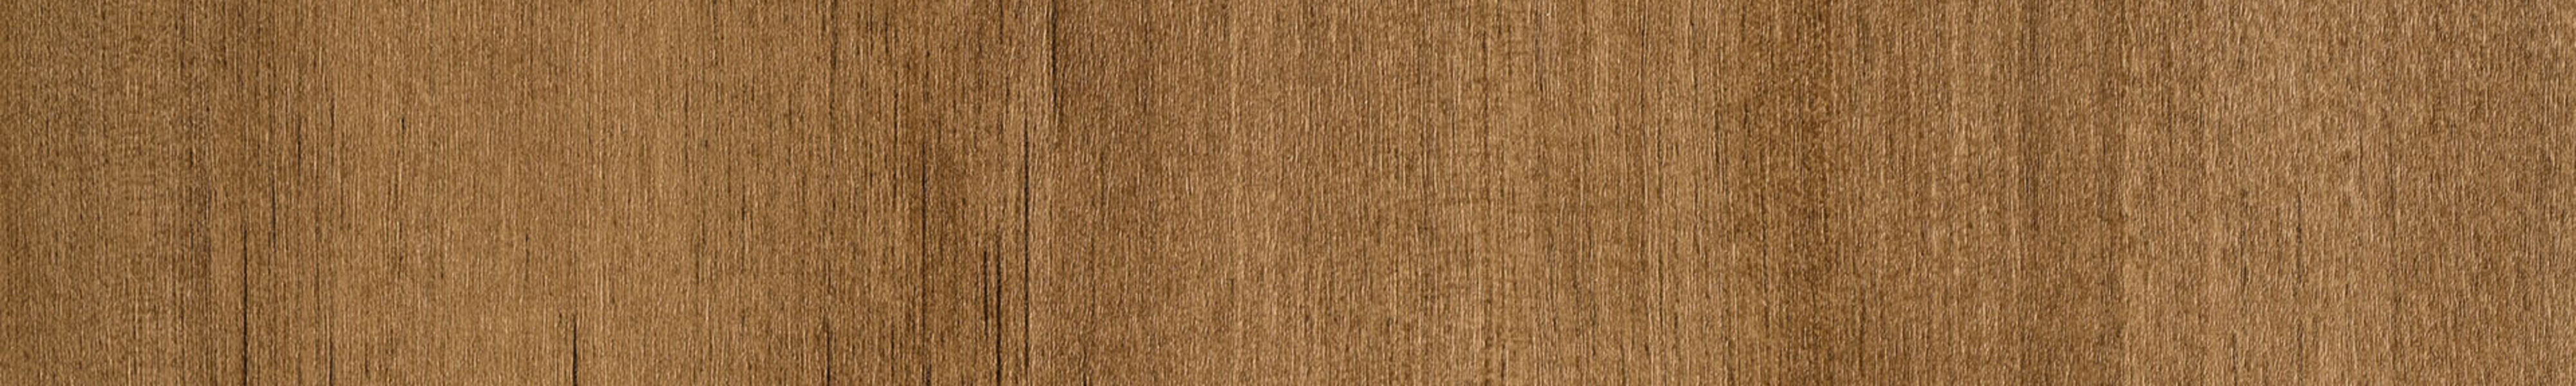 skai® structure Tira soft brown           0,40 1440